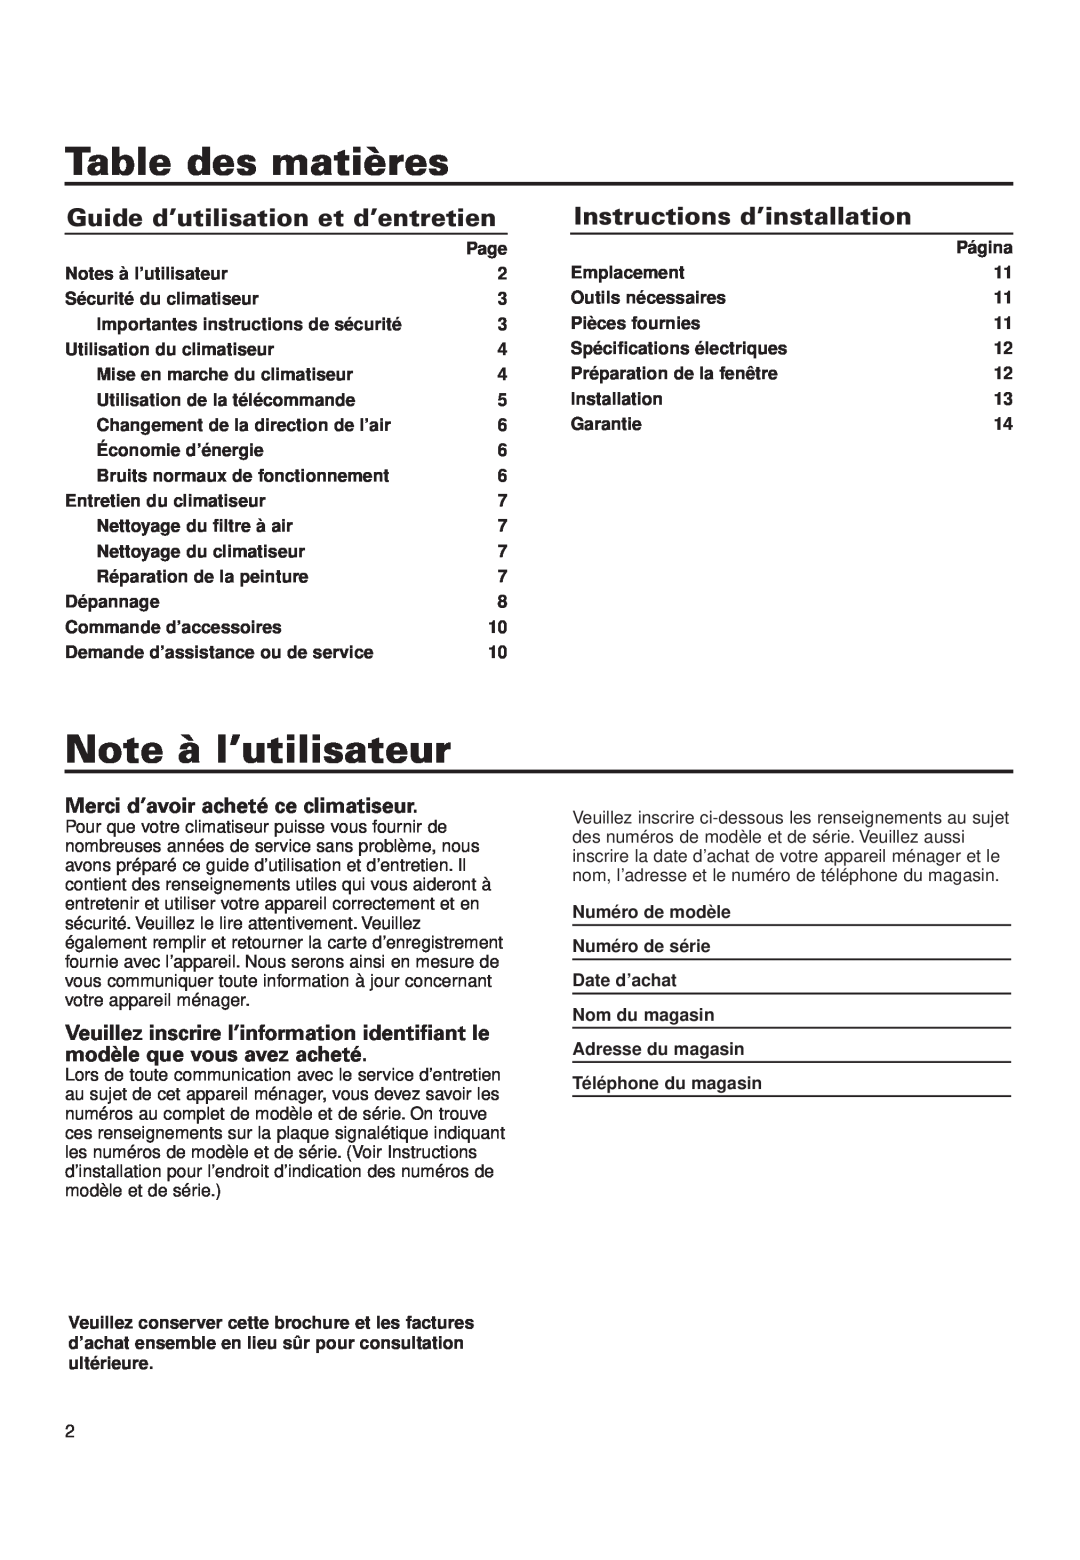 Whirlpool ACQ052PK0 Table des matières, Note à l’utilisateur, Guide d’utilisation et d’entretien, Notes à l’utilisateur 